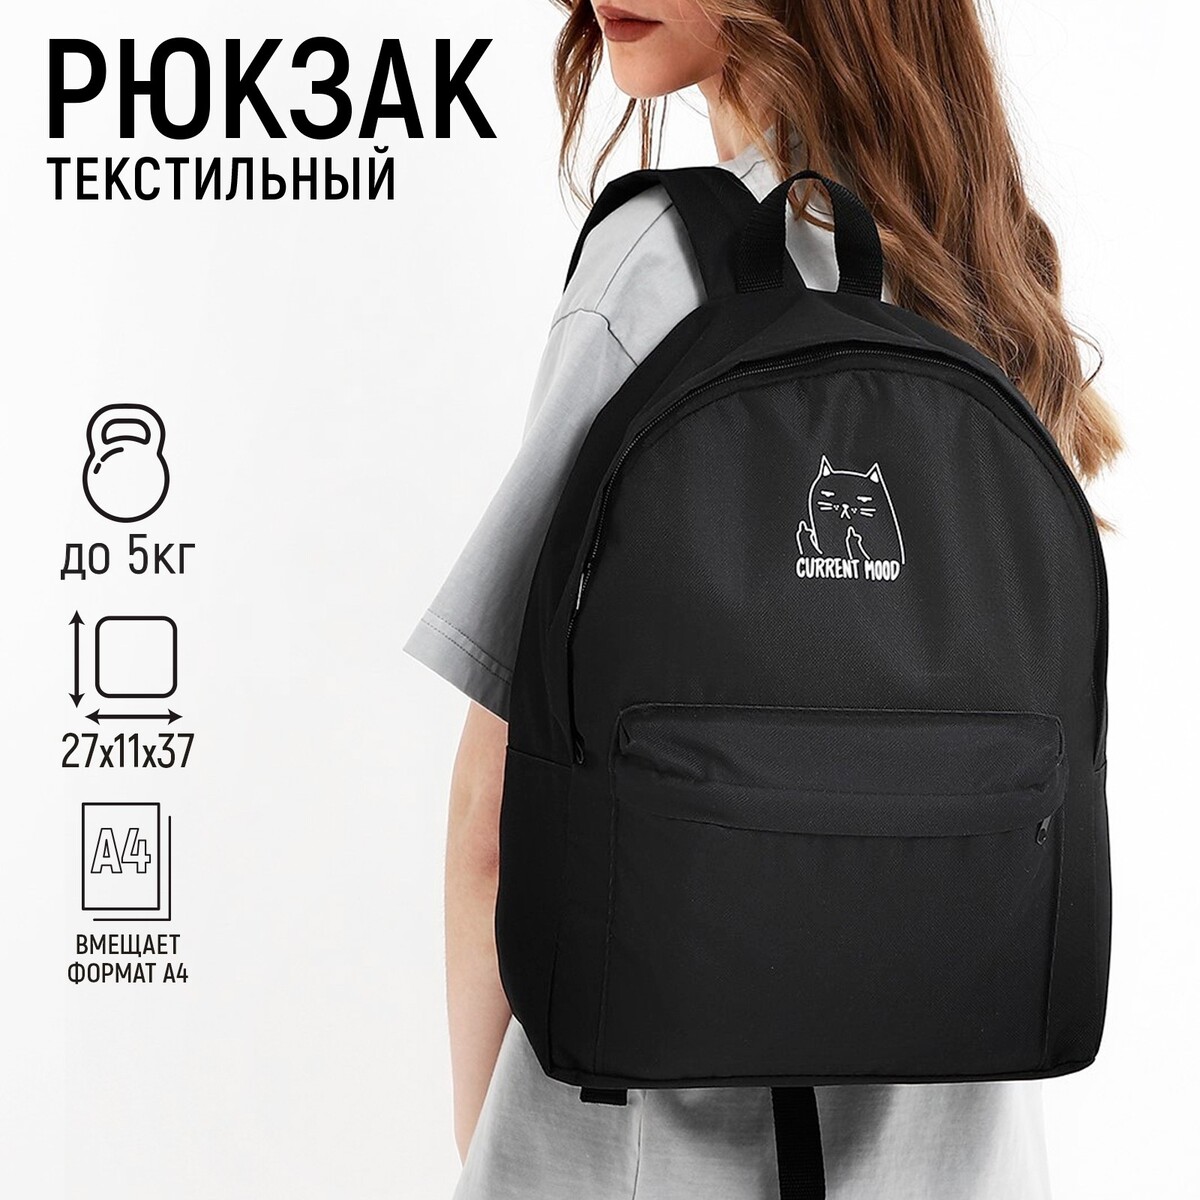 Рюкзак текстильный котик, с карманом, 27*11*37, черный